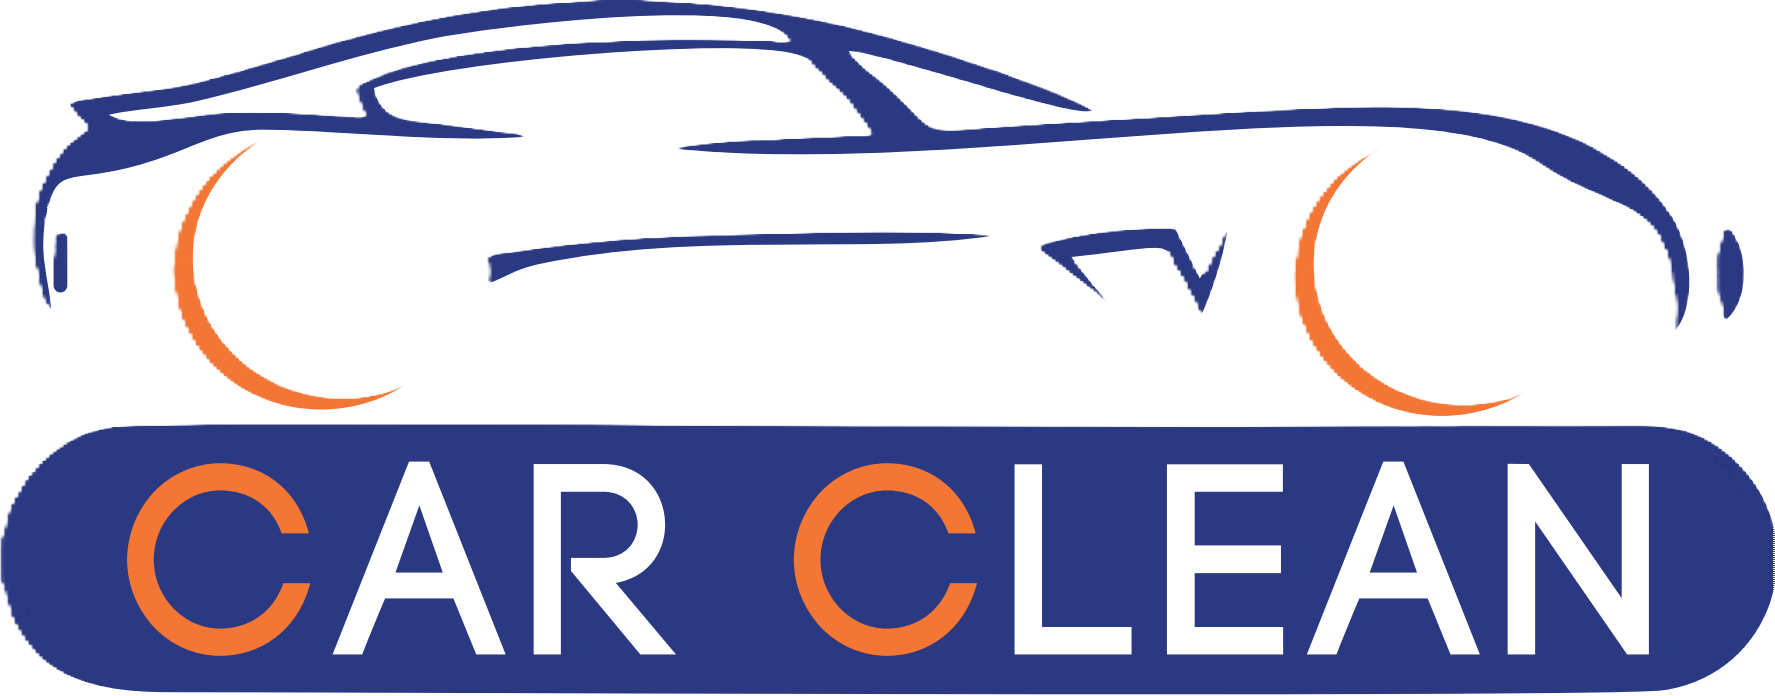 carclean-logo